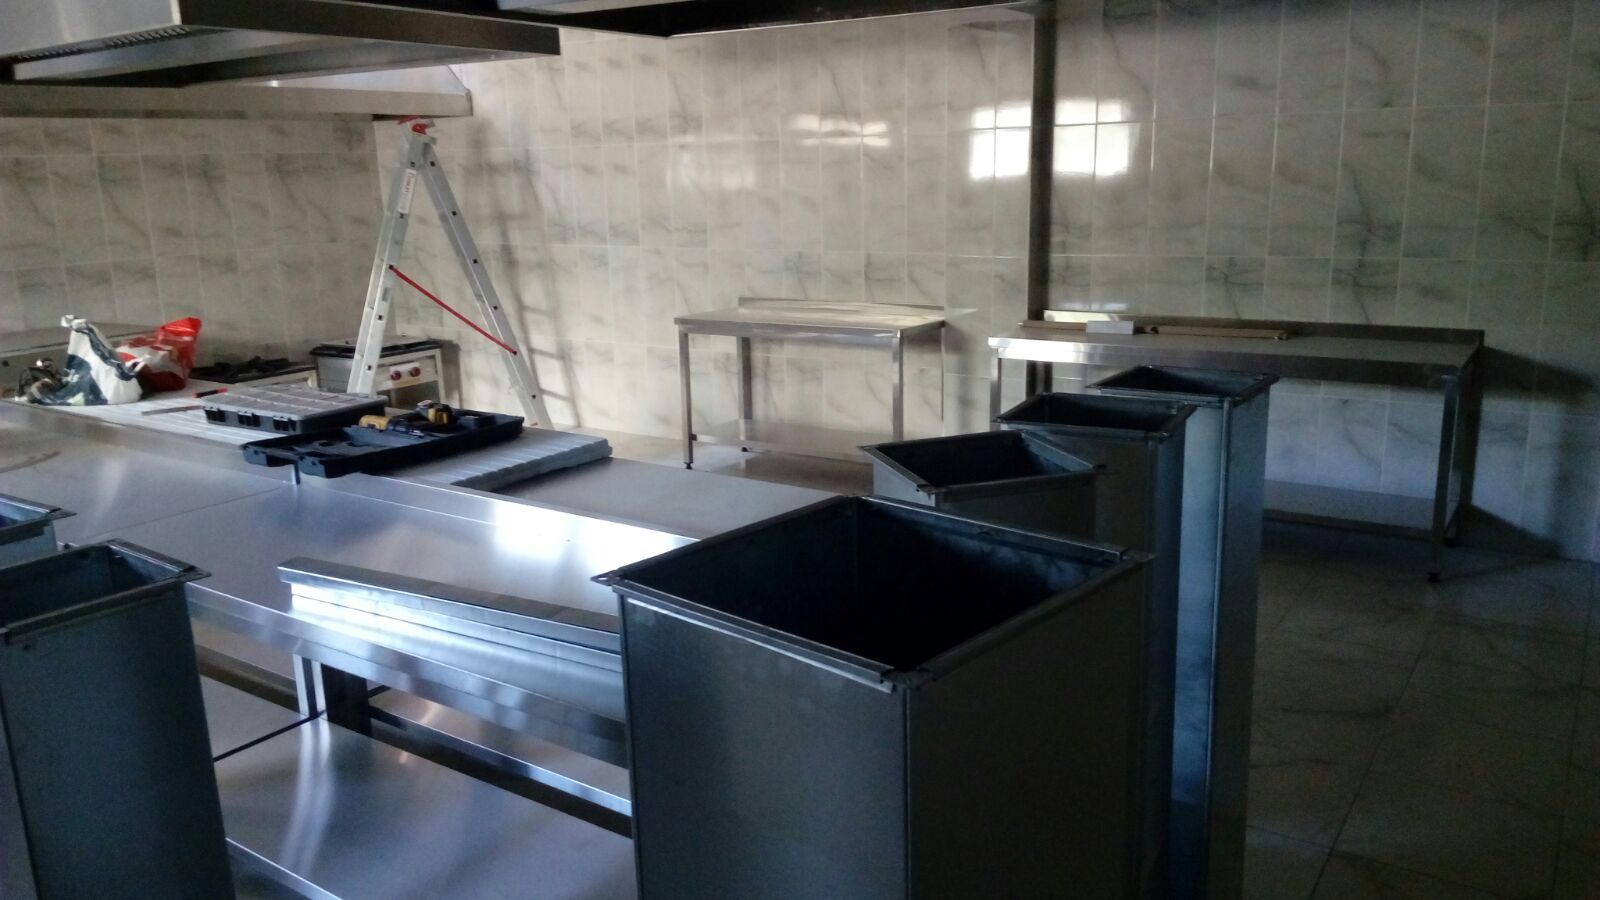   İnox endüstriyel mutfak krom pişirme ocağı ve krom duvar tipi davlumbaz , havalandırma sistemi bağlantısı Ankara Ostim İvedik 0549 549 76 09